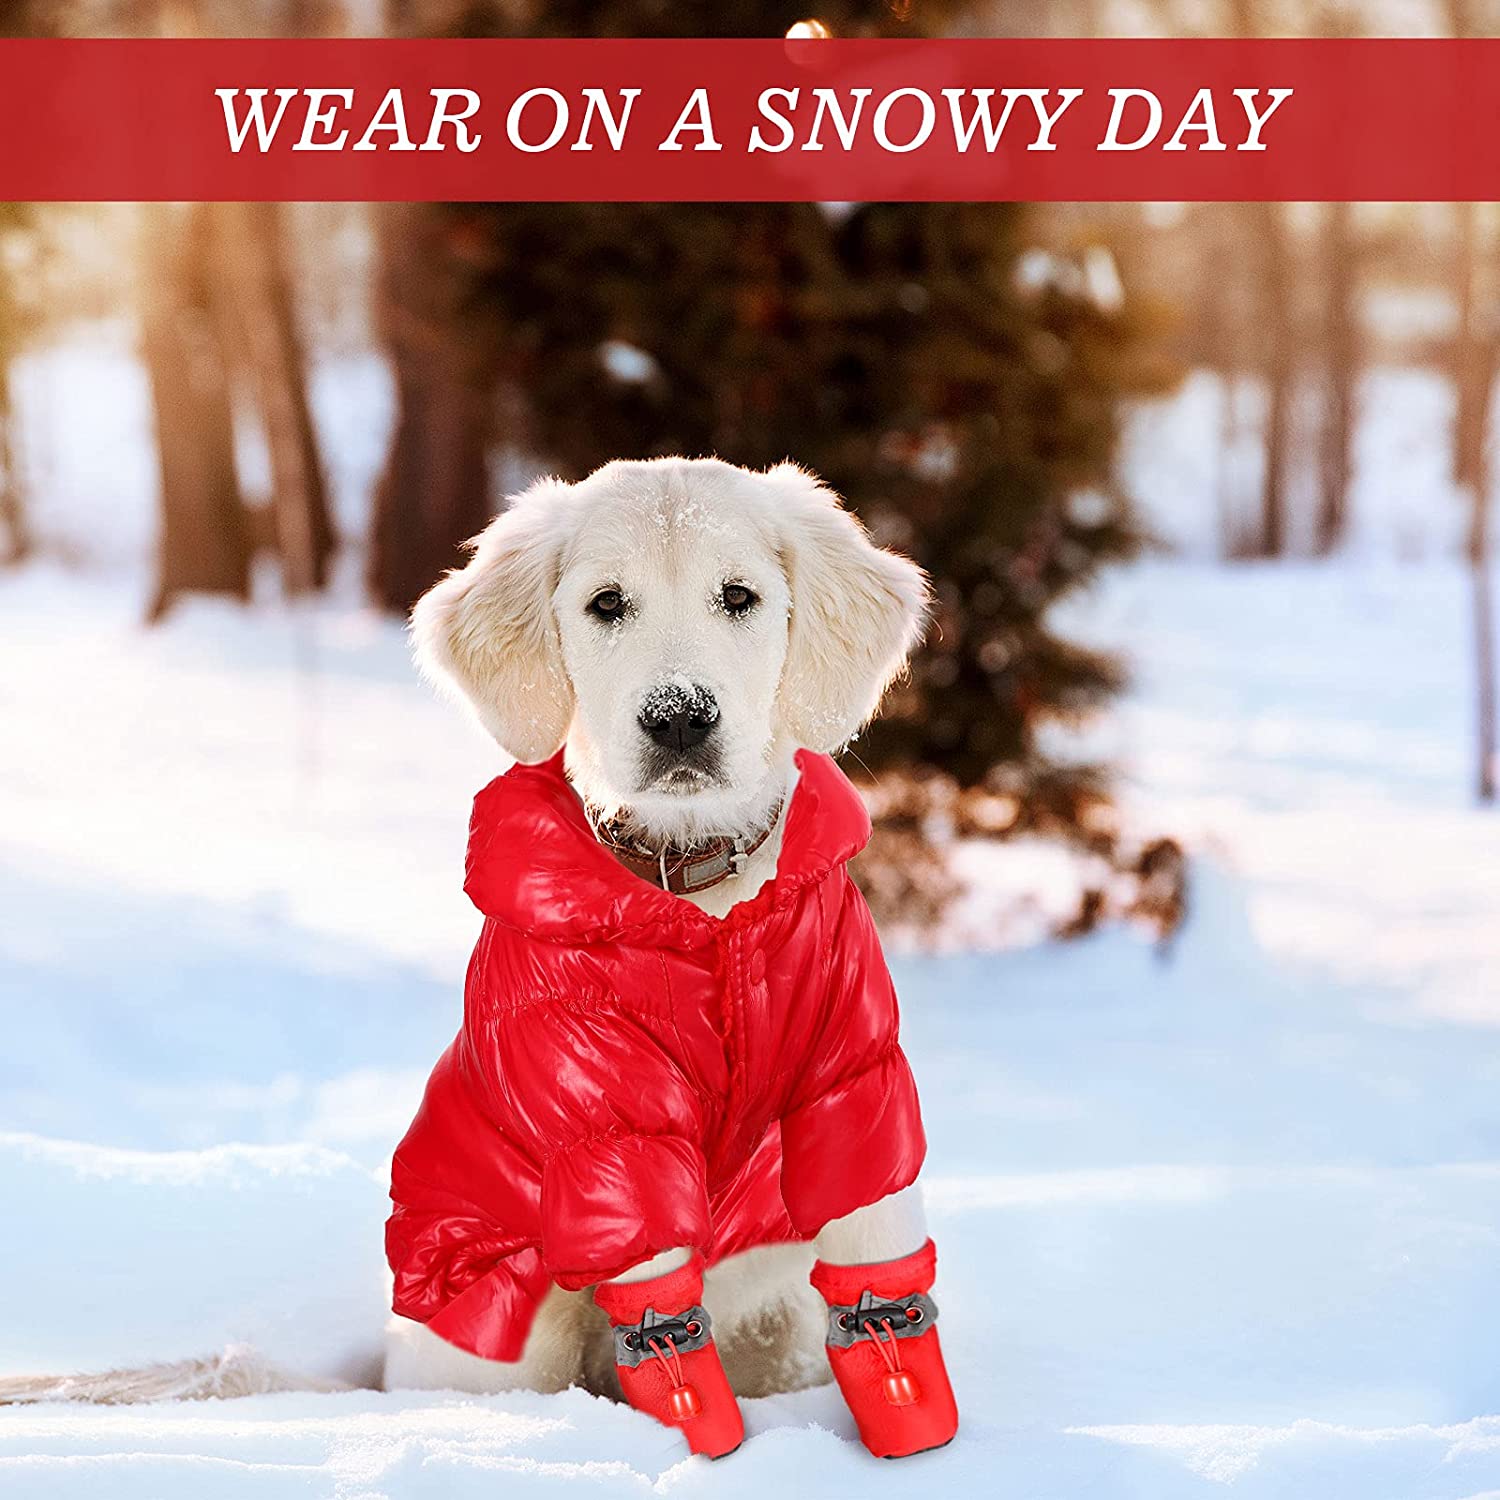 ژاکت سگ گرم در بسته شدن دکمه طراحی شده است که پوشیدن و درآوردن آن آسان است